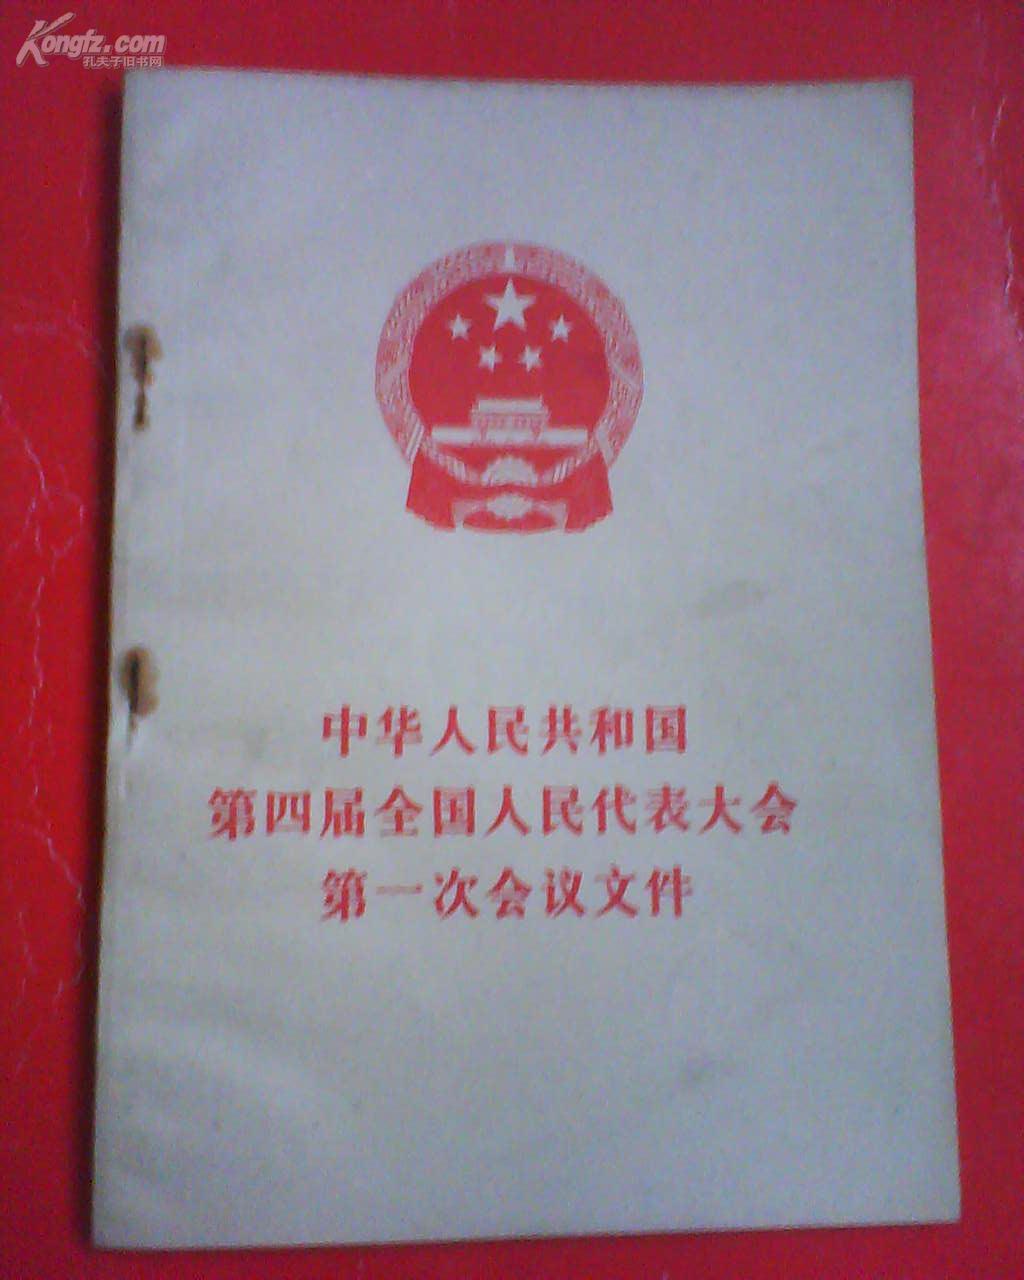 中华人民共和国第四届全国人民代表大会第一次会议文件  1975年 带毛像、语录